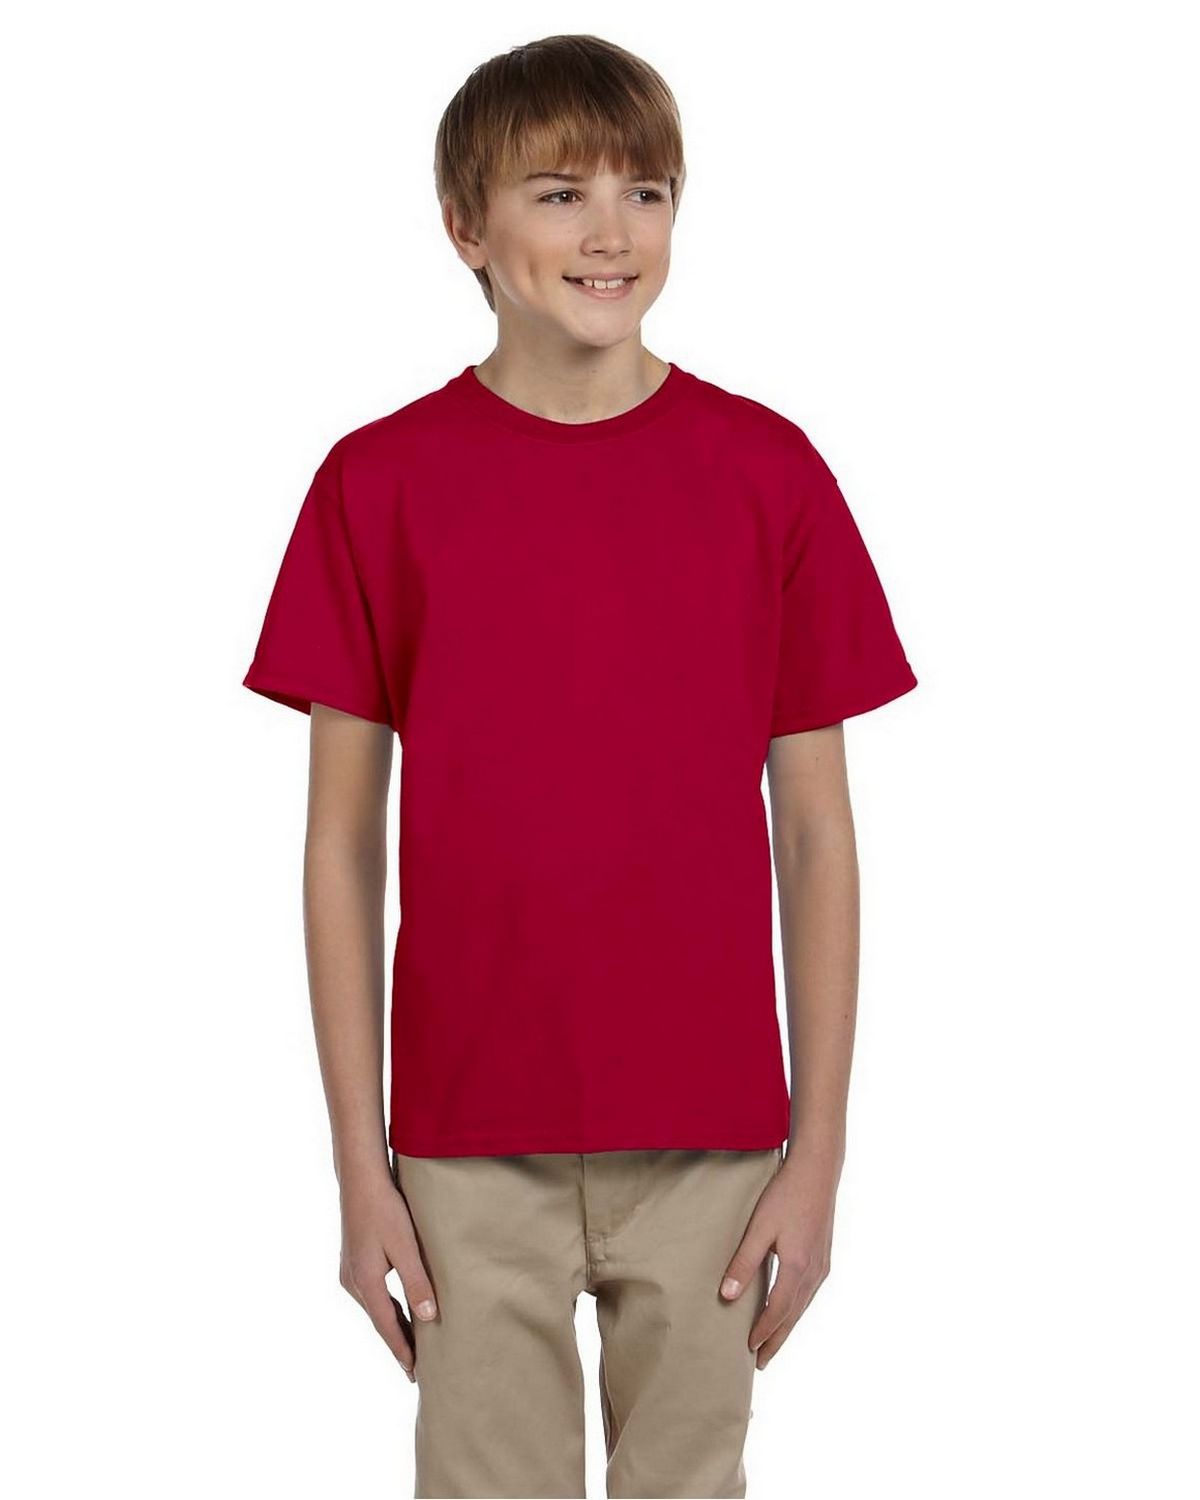 Big Al Fishing T-Shirt XXL / Crimson / CC Short Sleeve (Pocket)